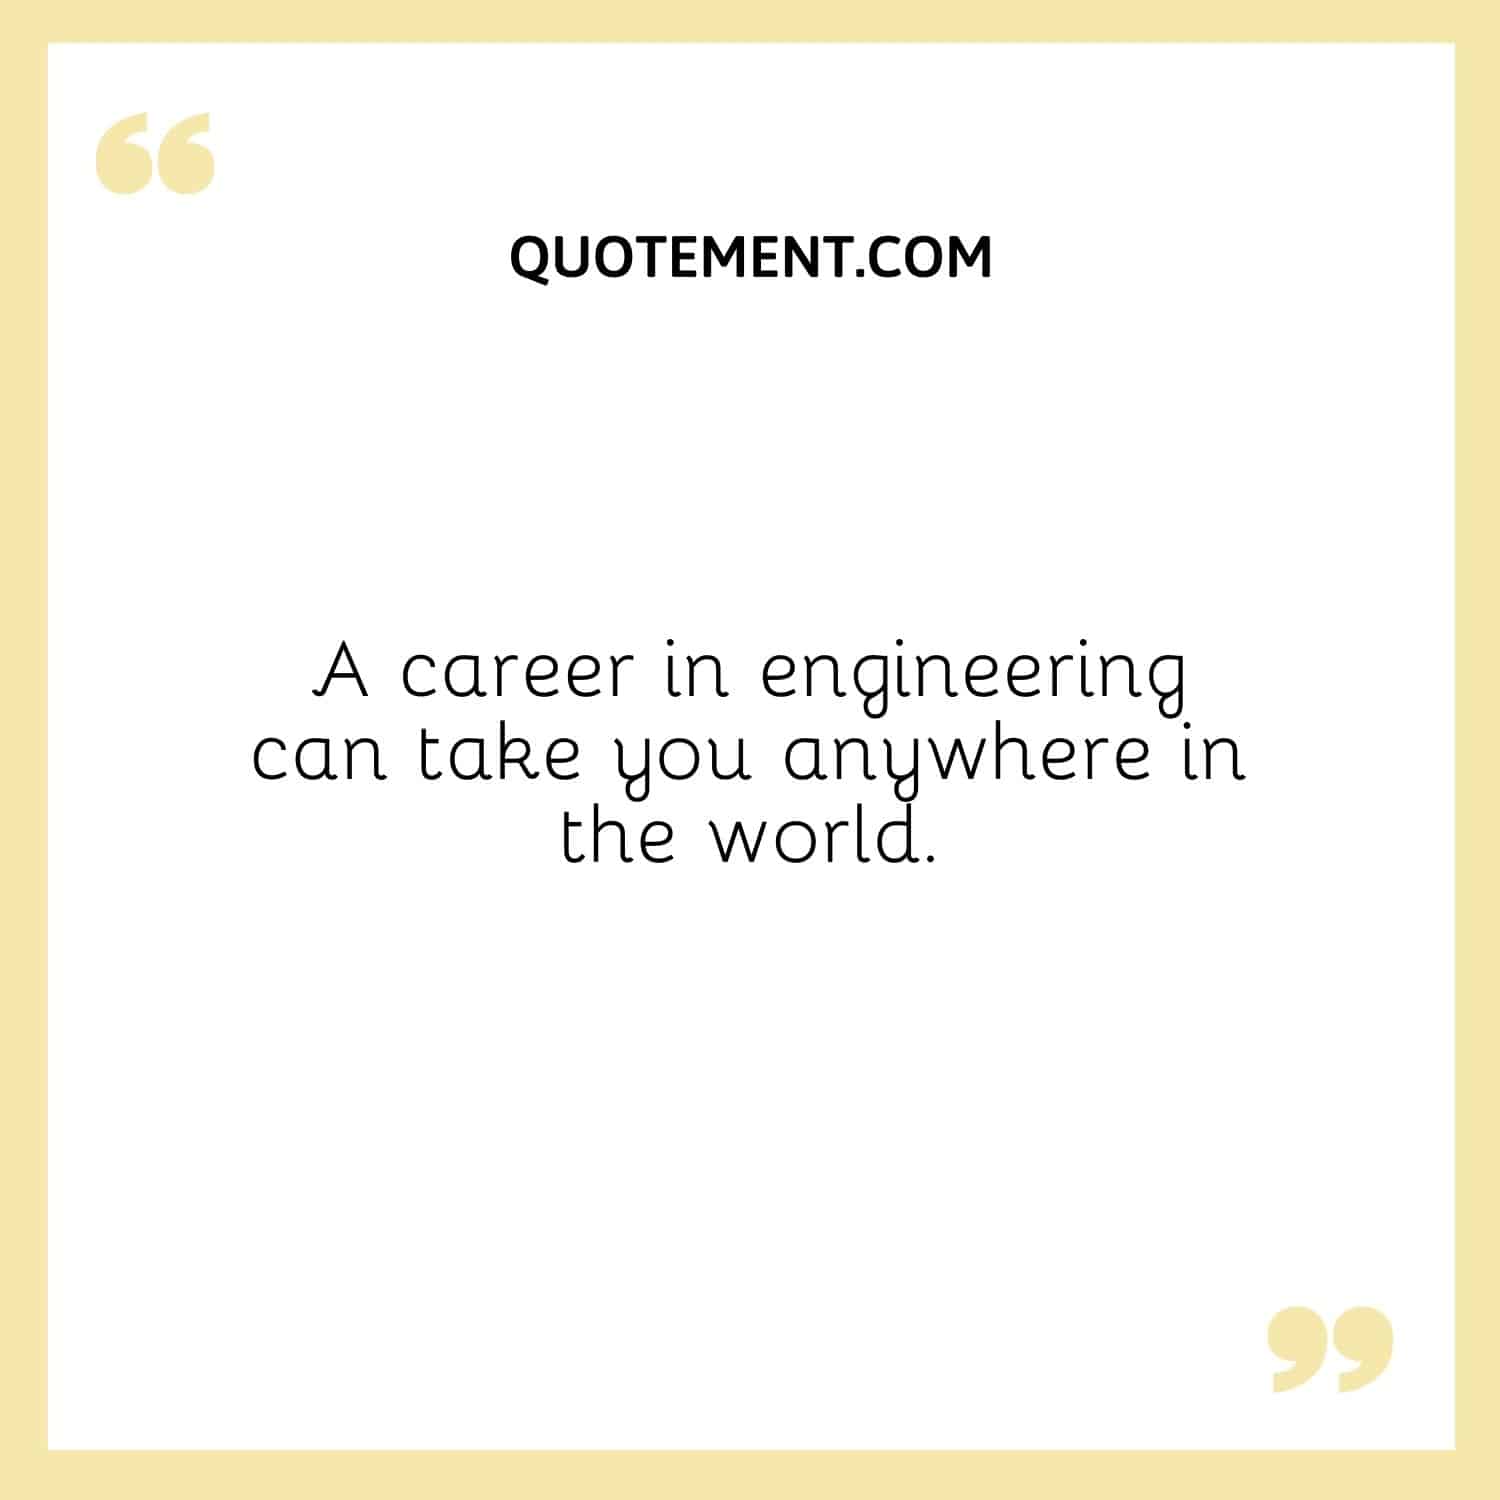 Una carrera en ingeniería puede llevarte a cualquier parte del mundo.